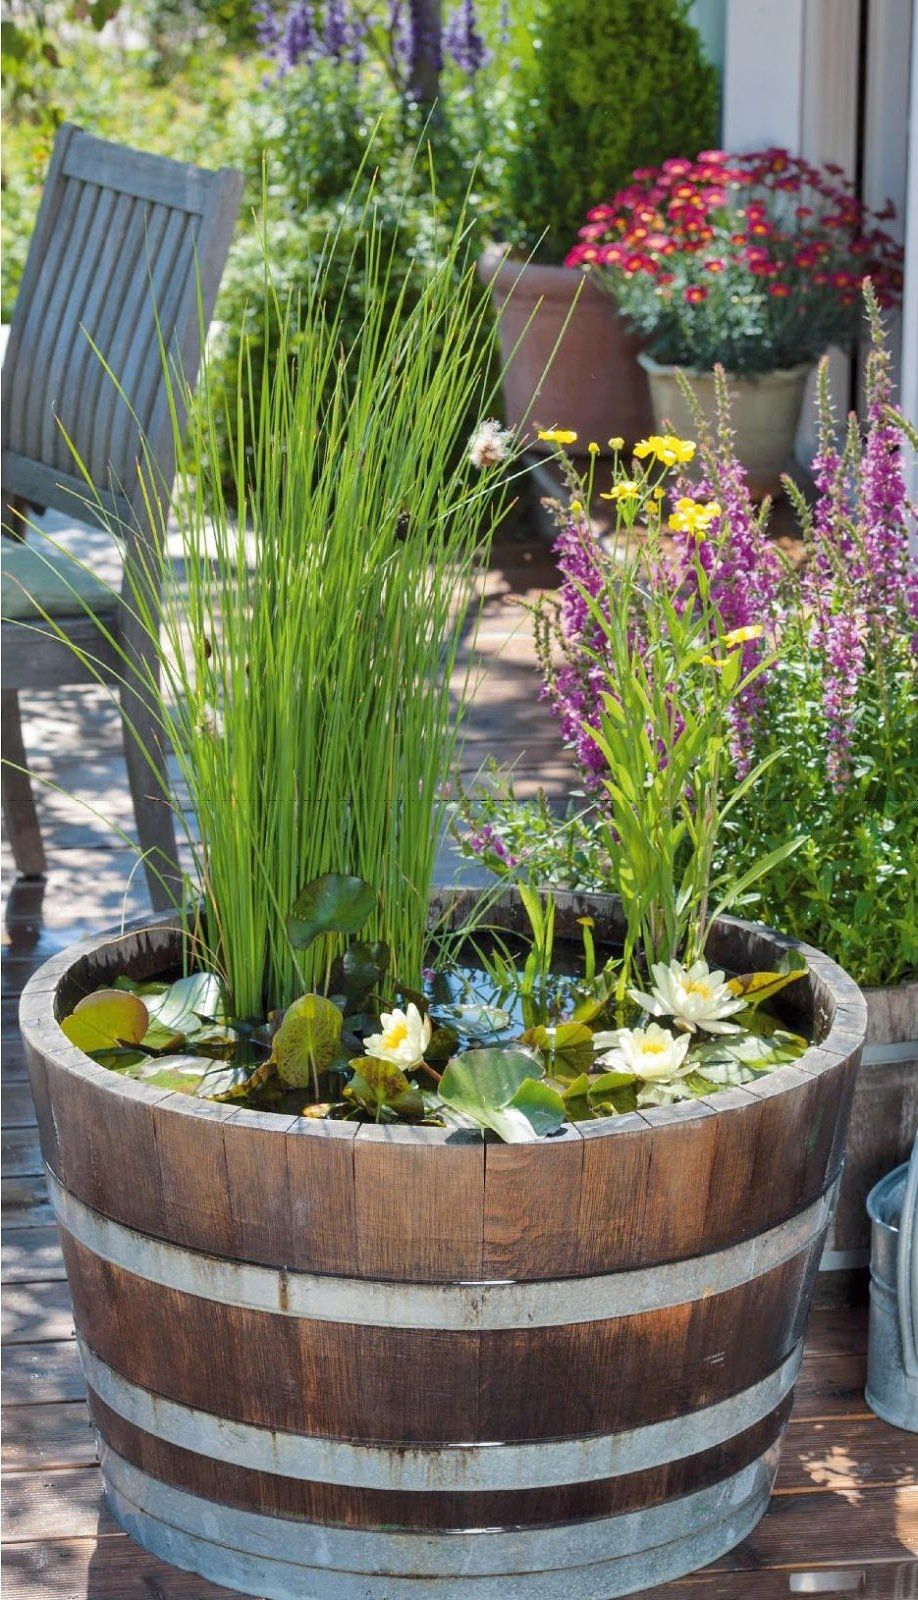 Pinterest Gartenideen Luxus Diy Mini Teich Im topf Und Noch Viele tolle Gartenideen Für